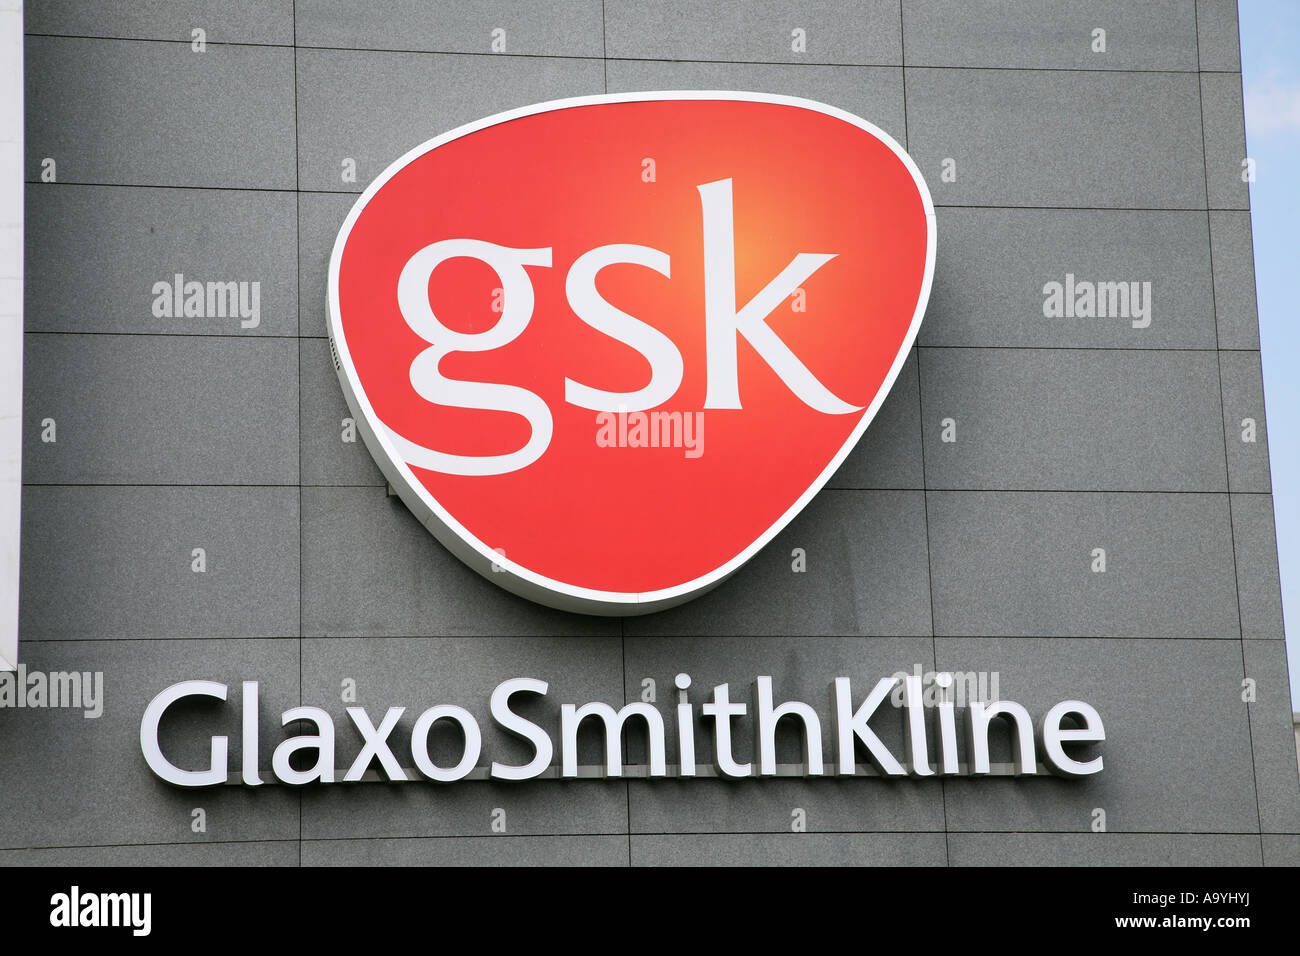 GSK GlaxoSmithKline Stock Photo